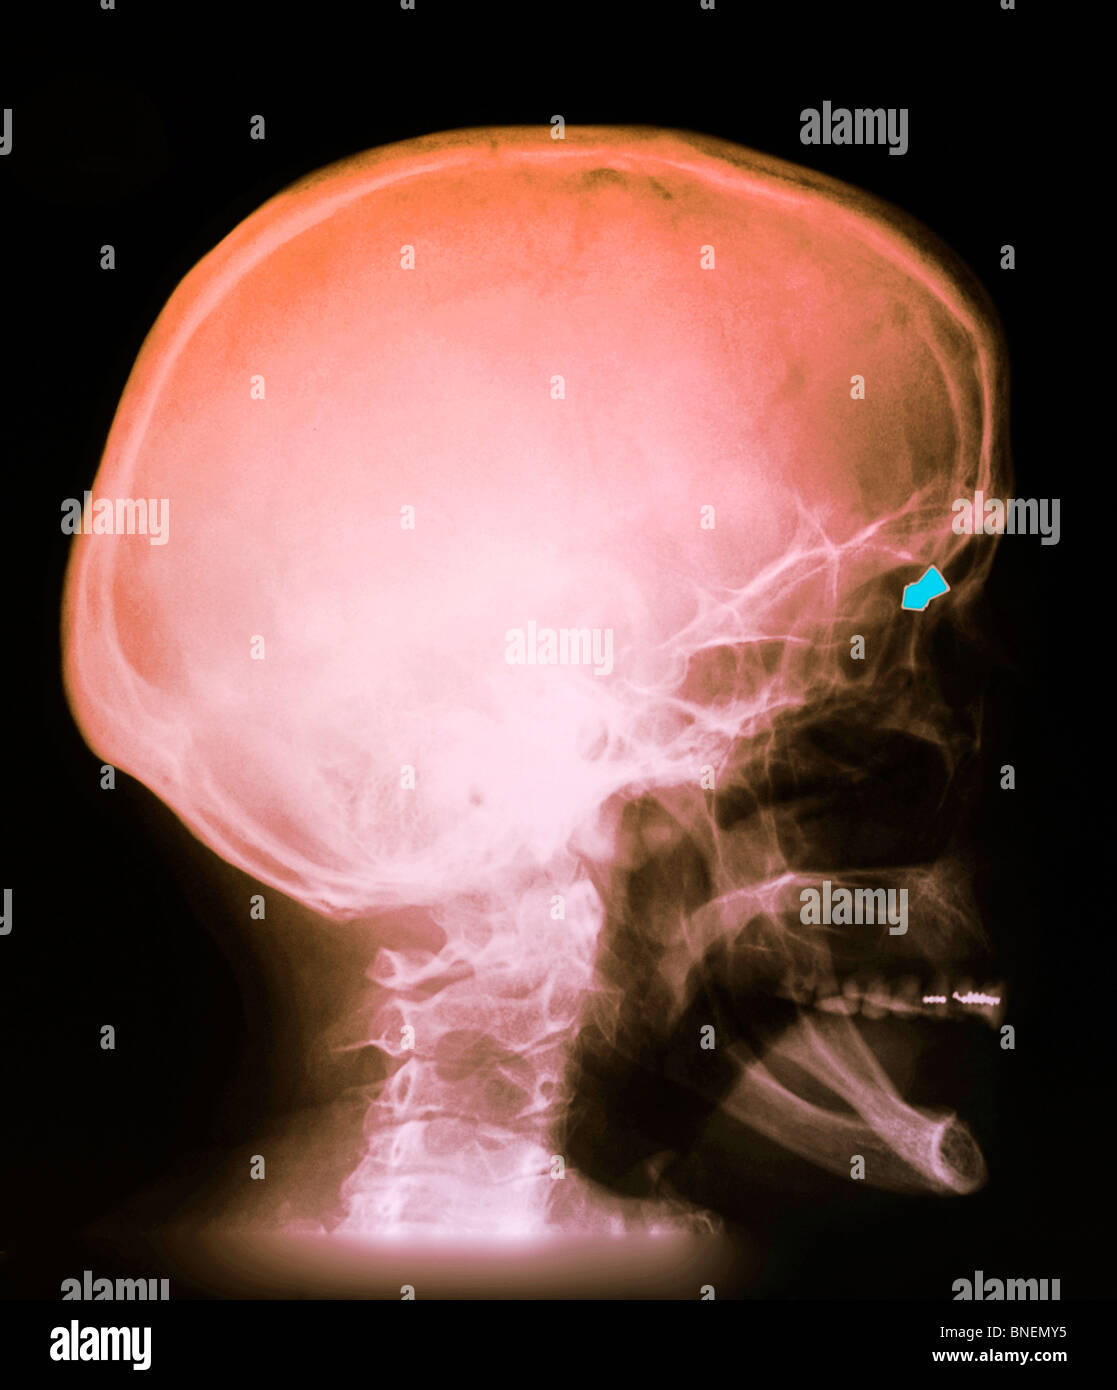 Cranio x-ray di una donna shot nell'occhio con una pistola di pellet. Foto Stock